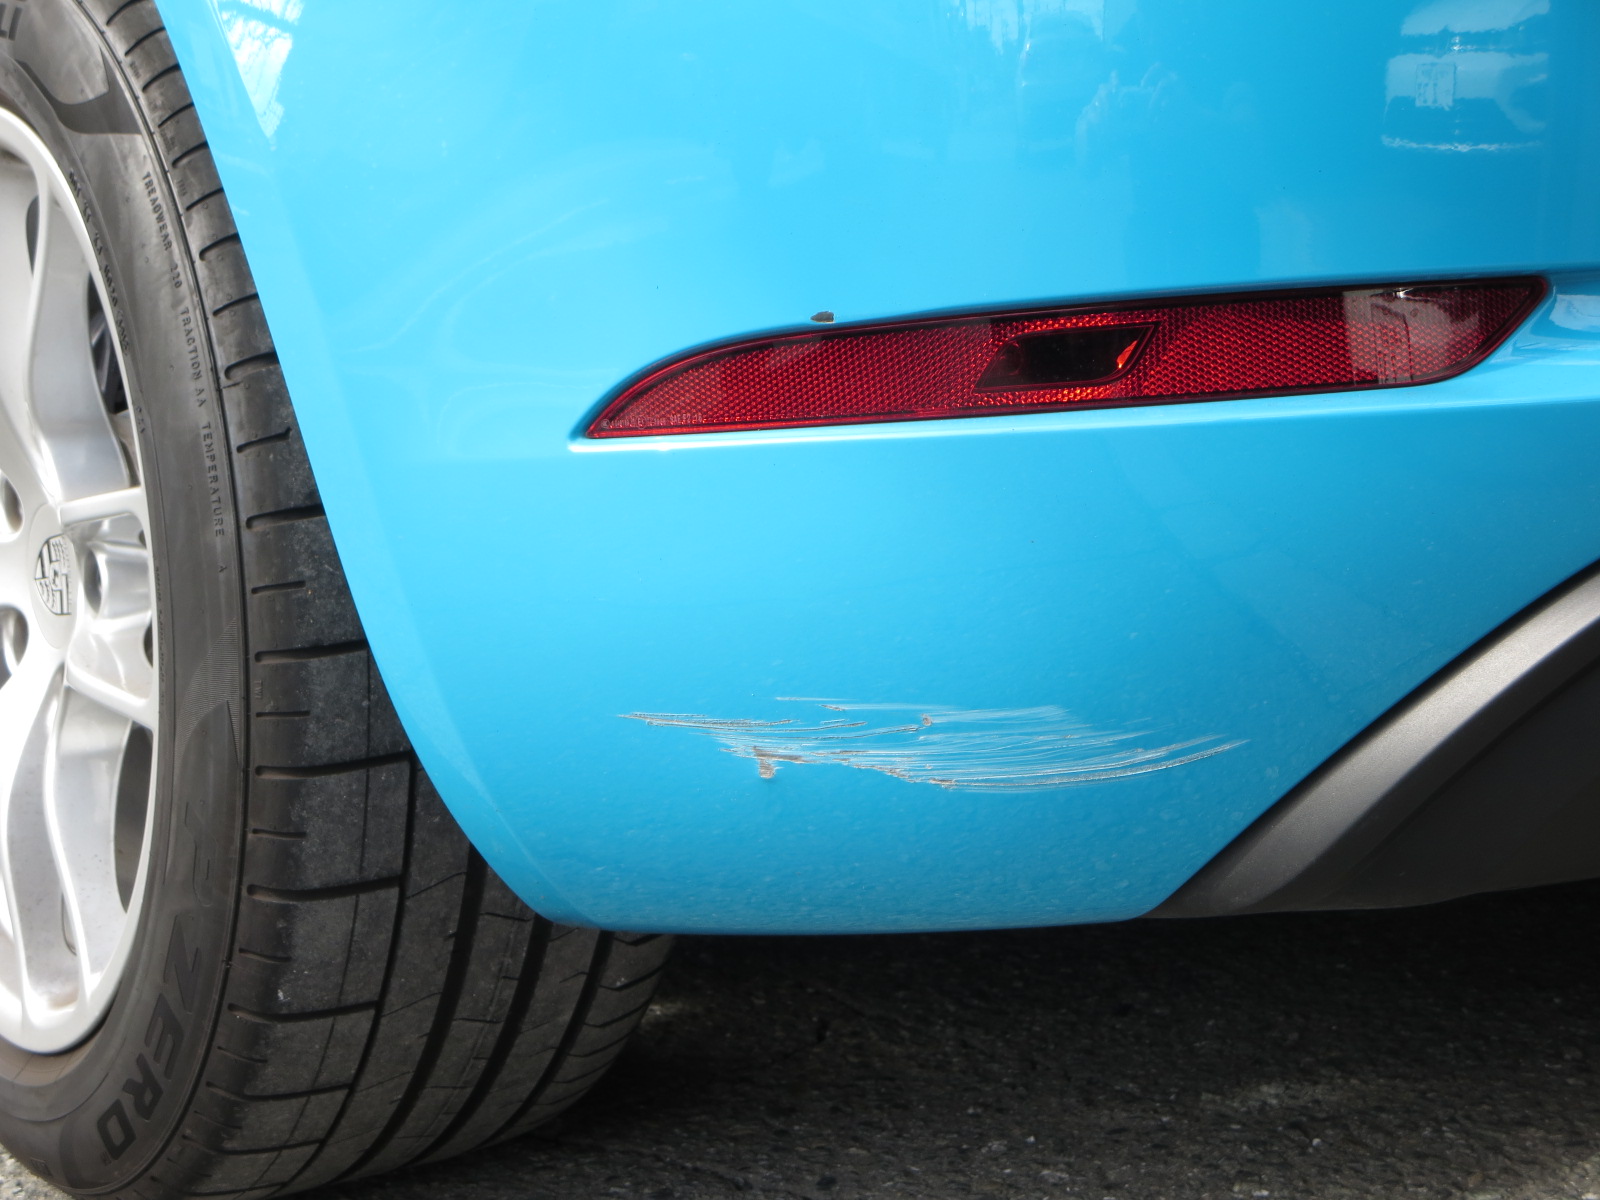 ポルシェ 718ボクスター バンパー修理 板金塗装はインターパシフィック